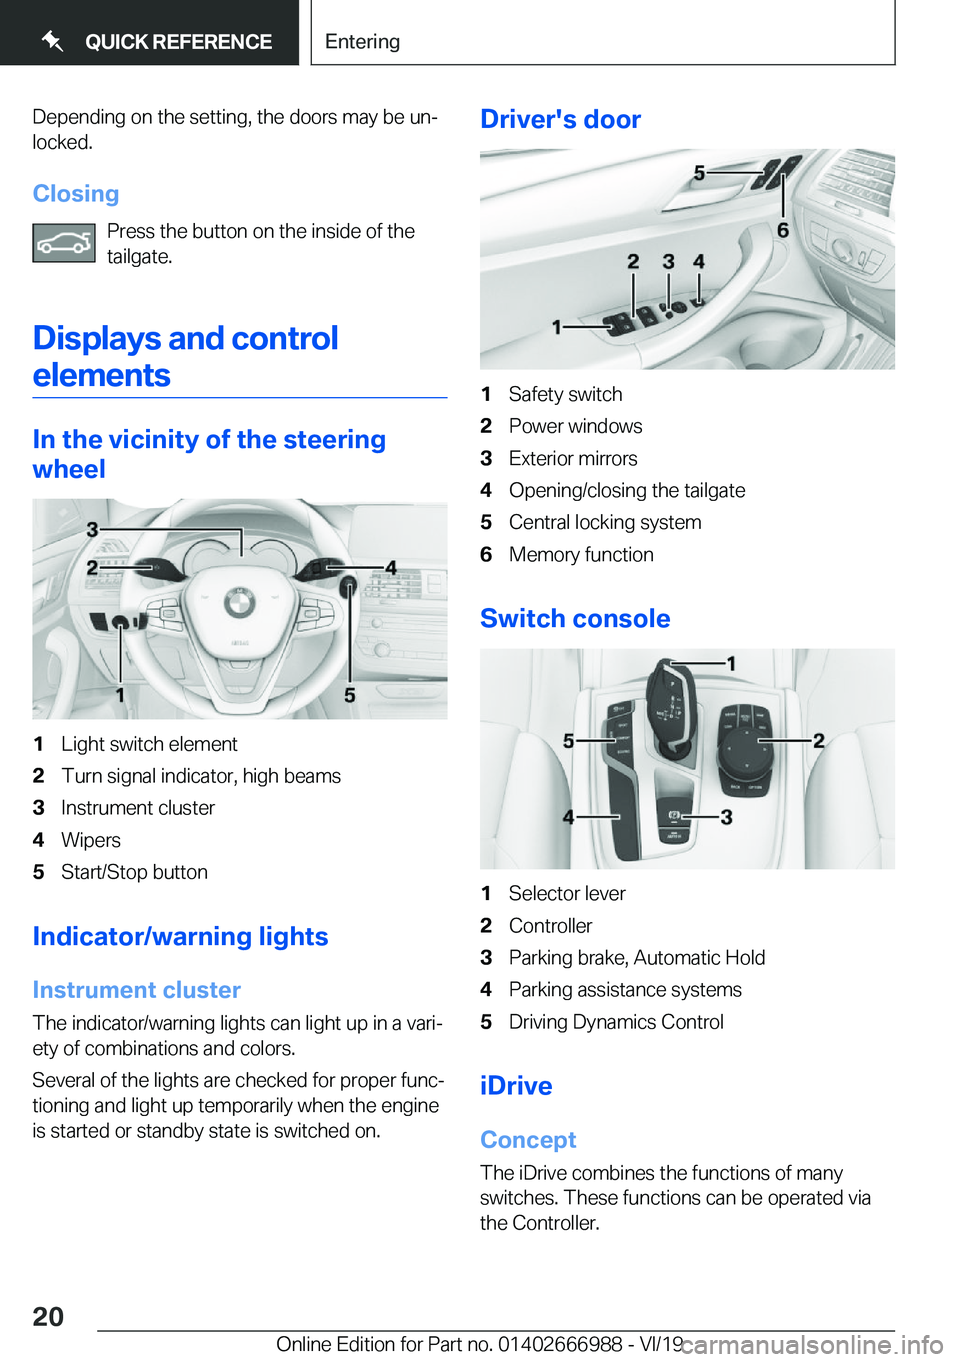 BMW X4 2020 User Guide �D�e�p�e�n�d�i�n�g��o�n��t�h�e��s�e�t�t�i�n�g�,��t�h�e��d�o�o�r�s��m�a�y��b�e��u�nj�l�o�c�k�e�d�.
�C�l�o�s�i�n�g �P�r�e�s�s��t�h�e��b�u�t�t�o�n��o�n��t�h�e��i�n�s�i�d�e��o�f��t�h�e
�t�